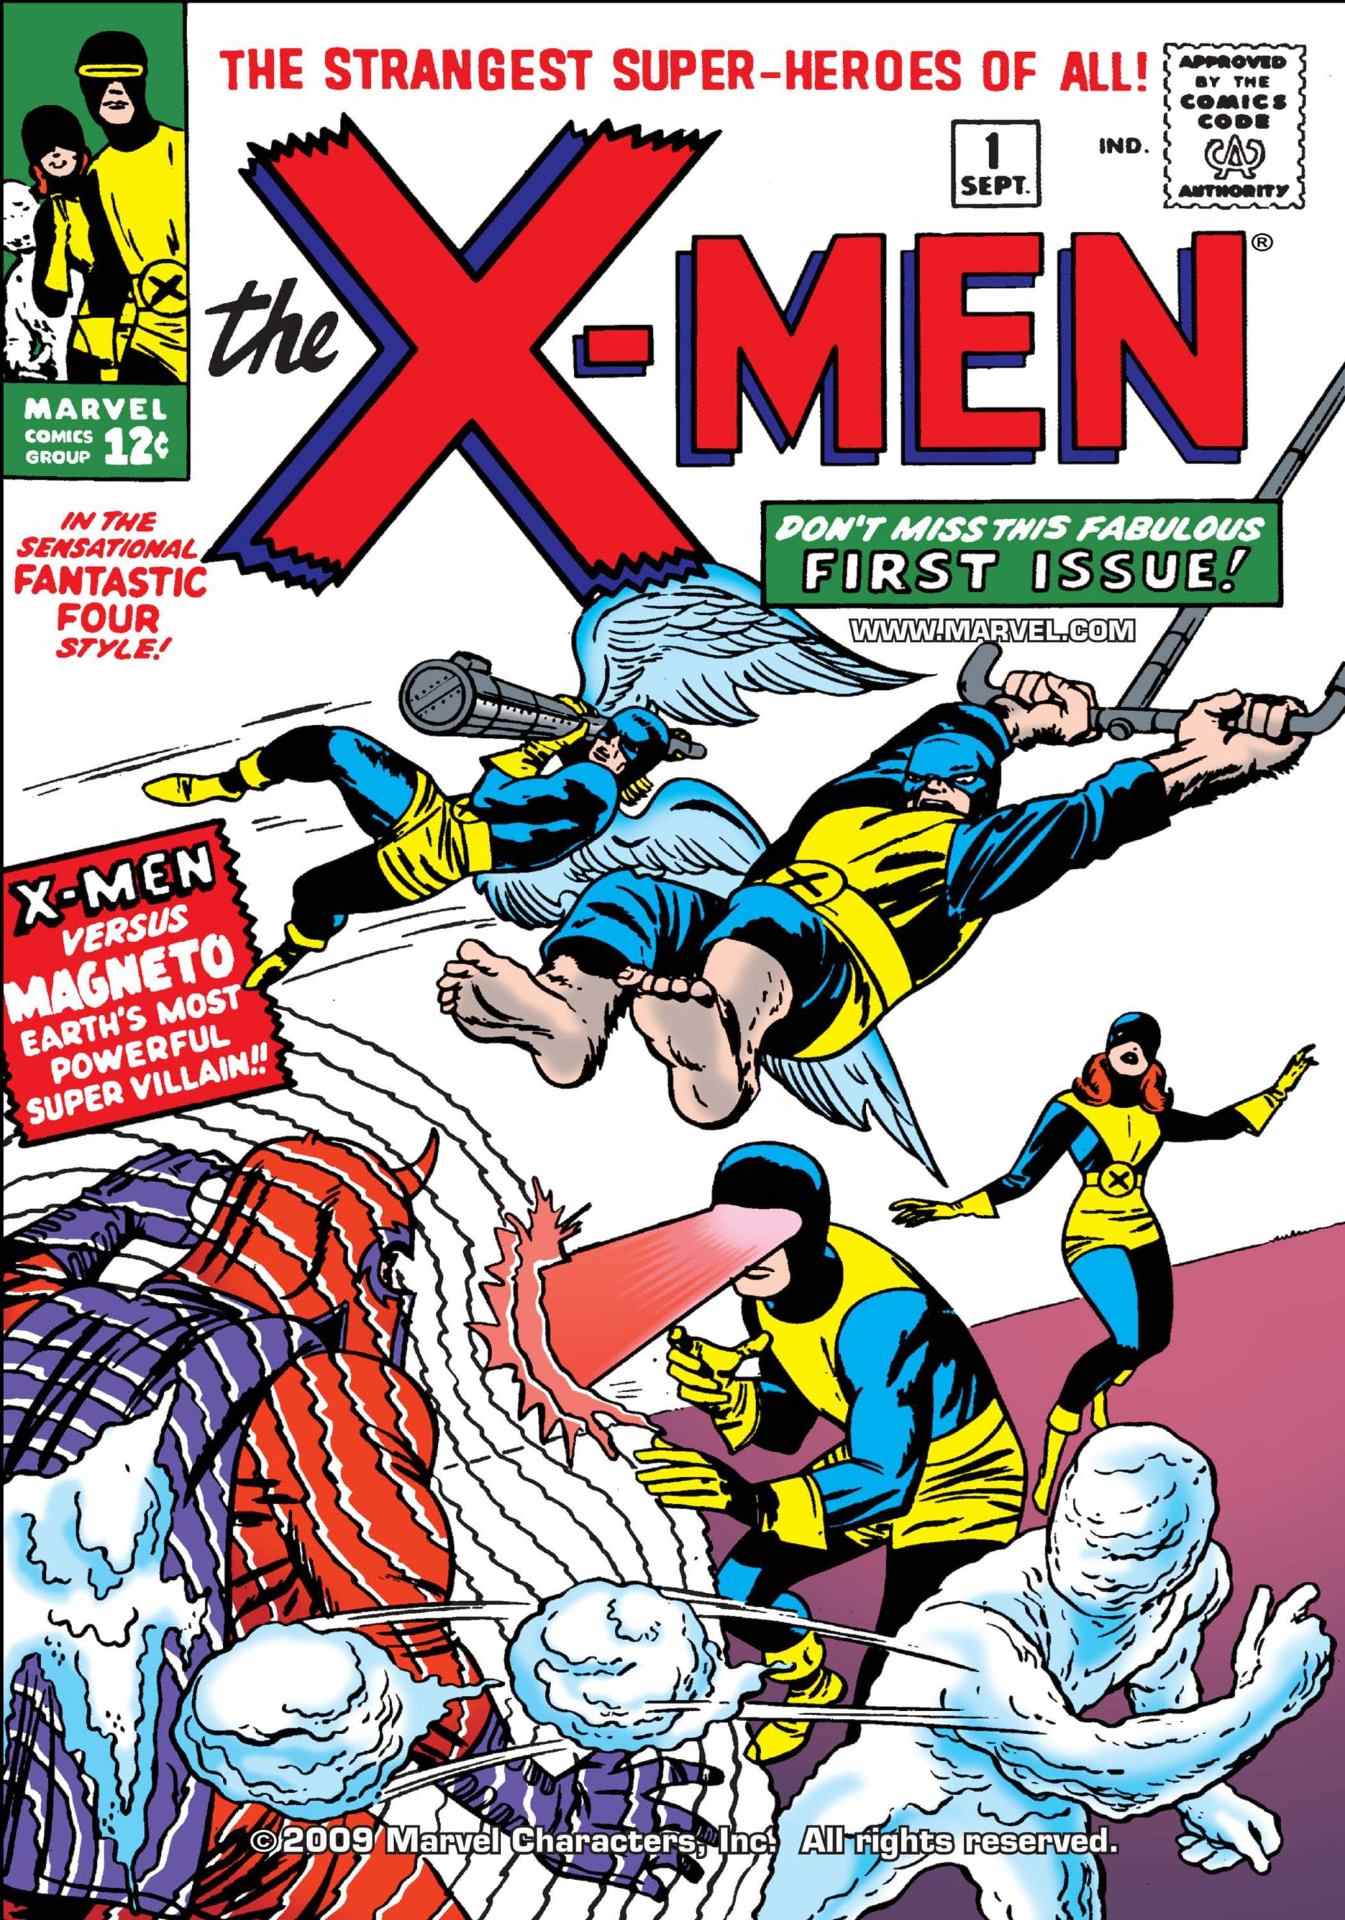 Couverture X-Men #1 de Jack Kirby en 1963